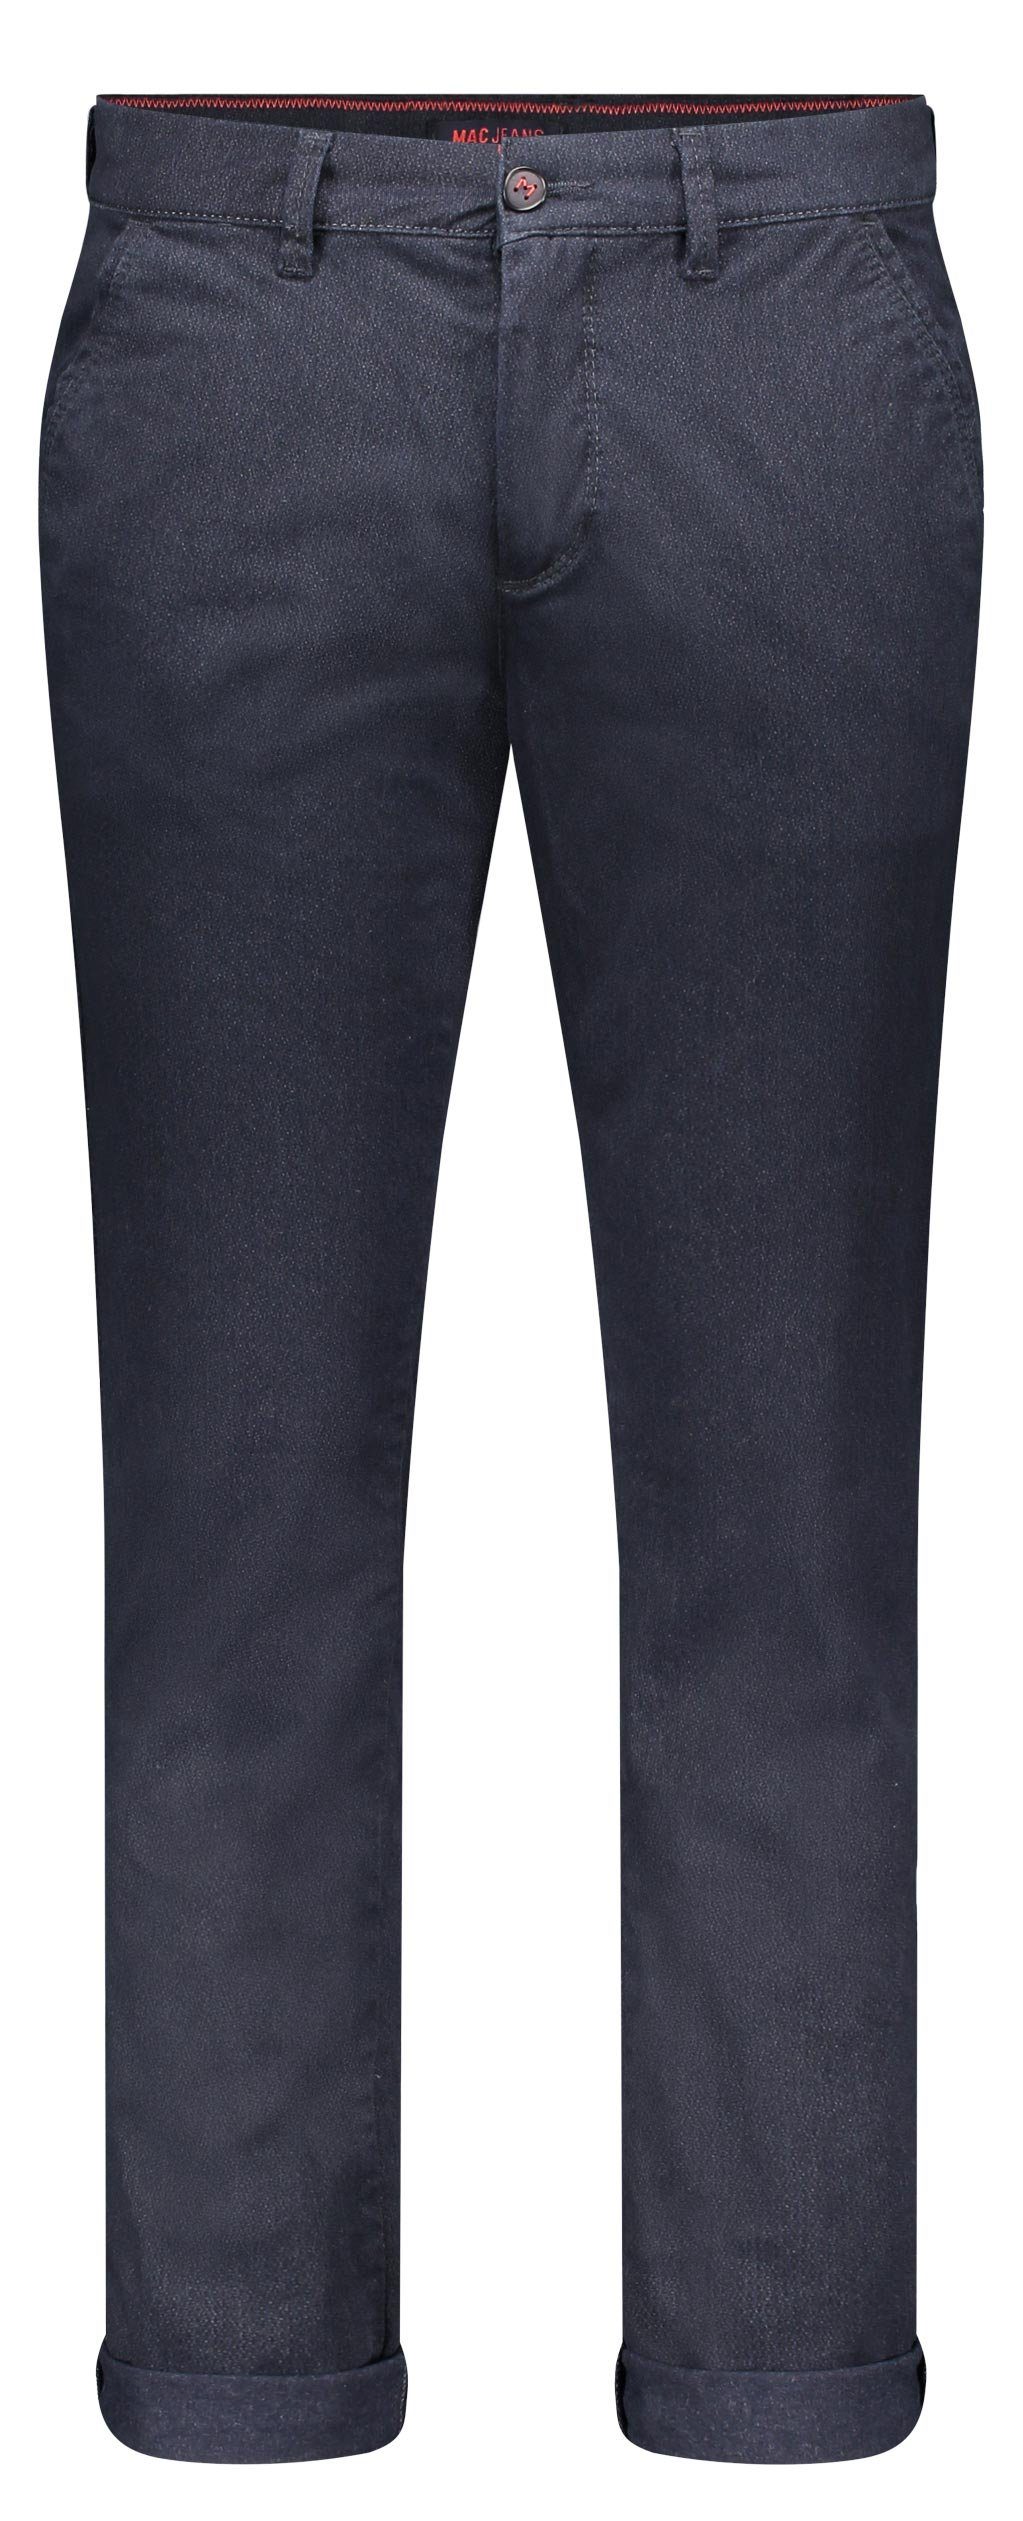 MAC 5-Pocket-Jeans MAC LENNOX midnight blue 6367-00-0679L 199